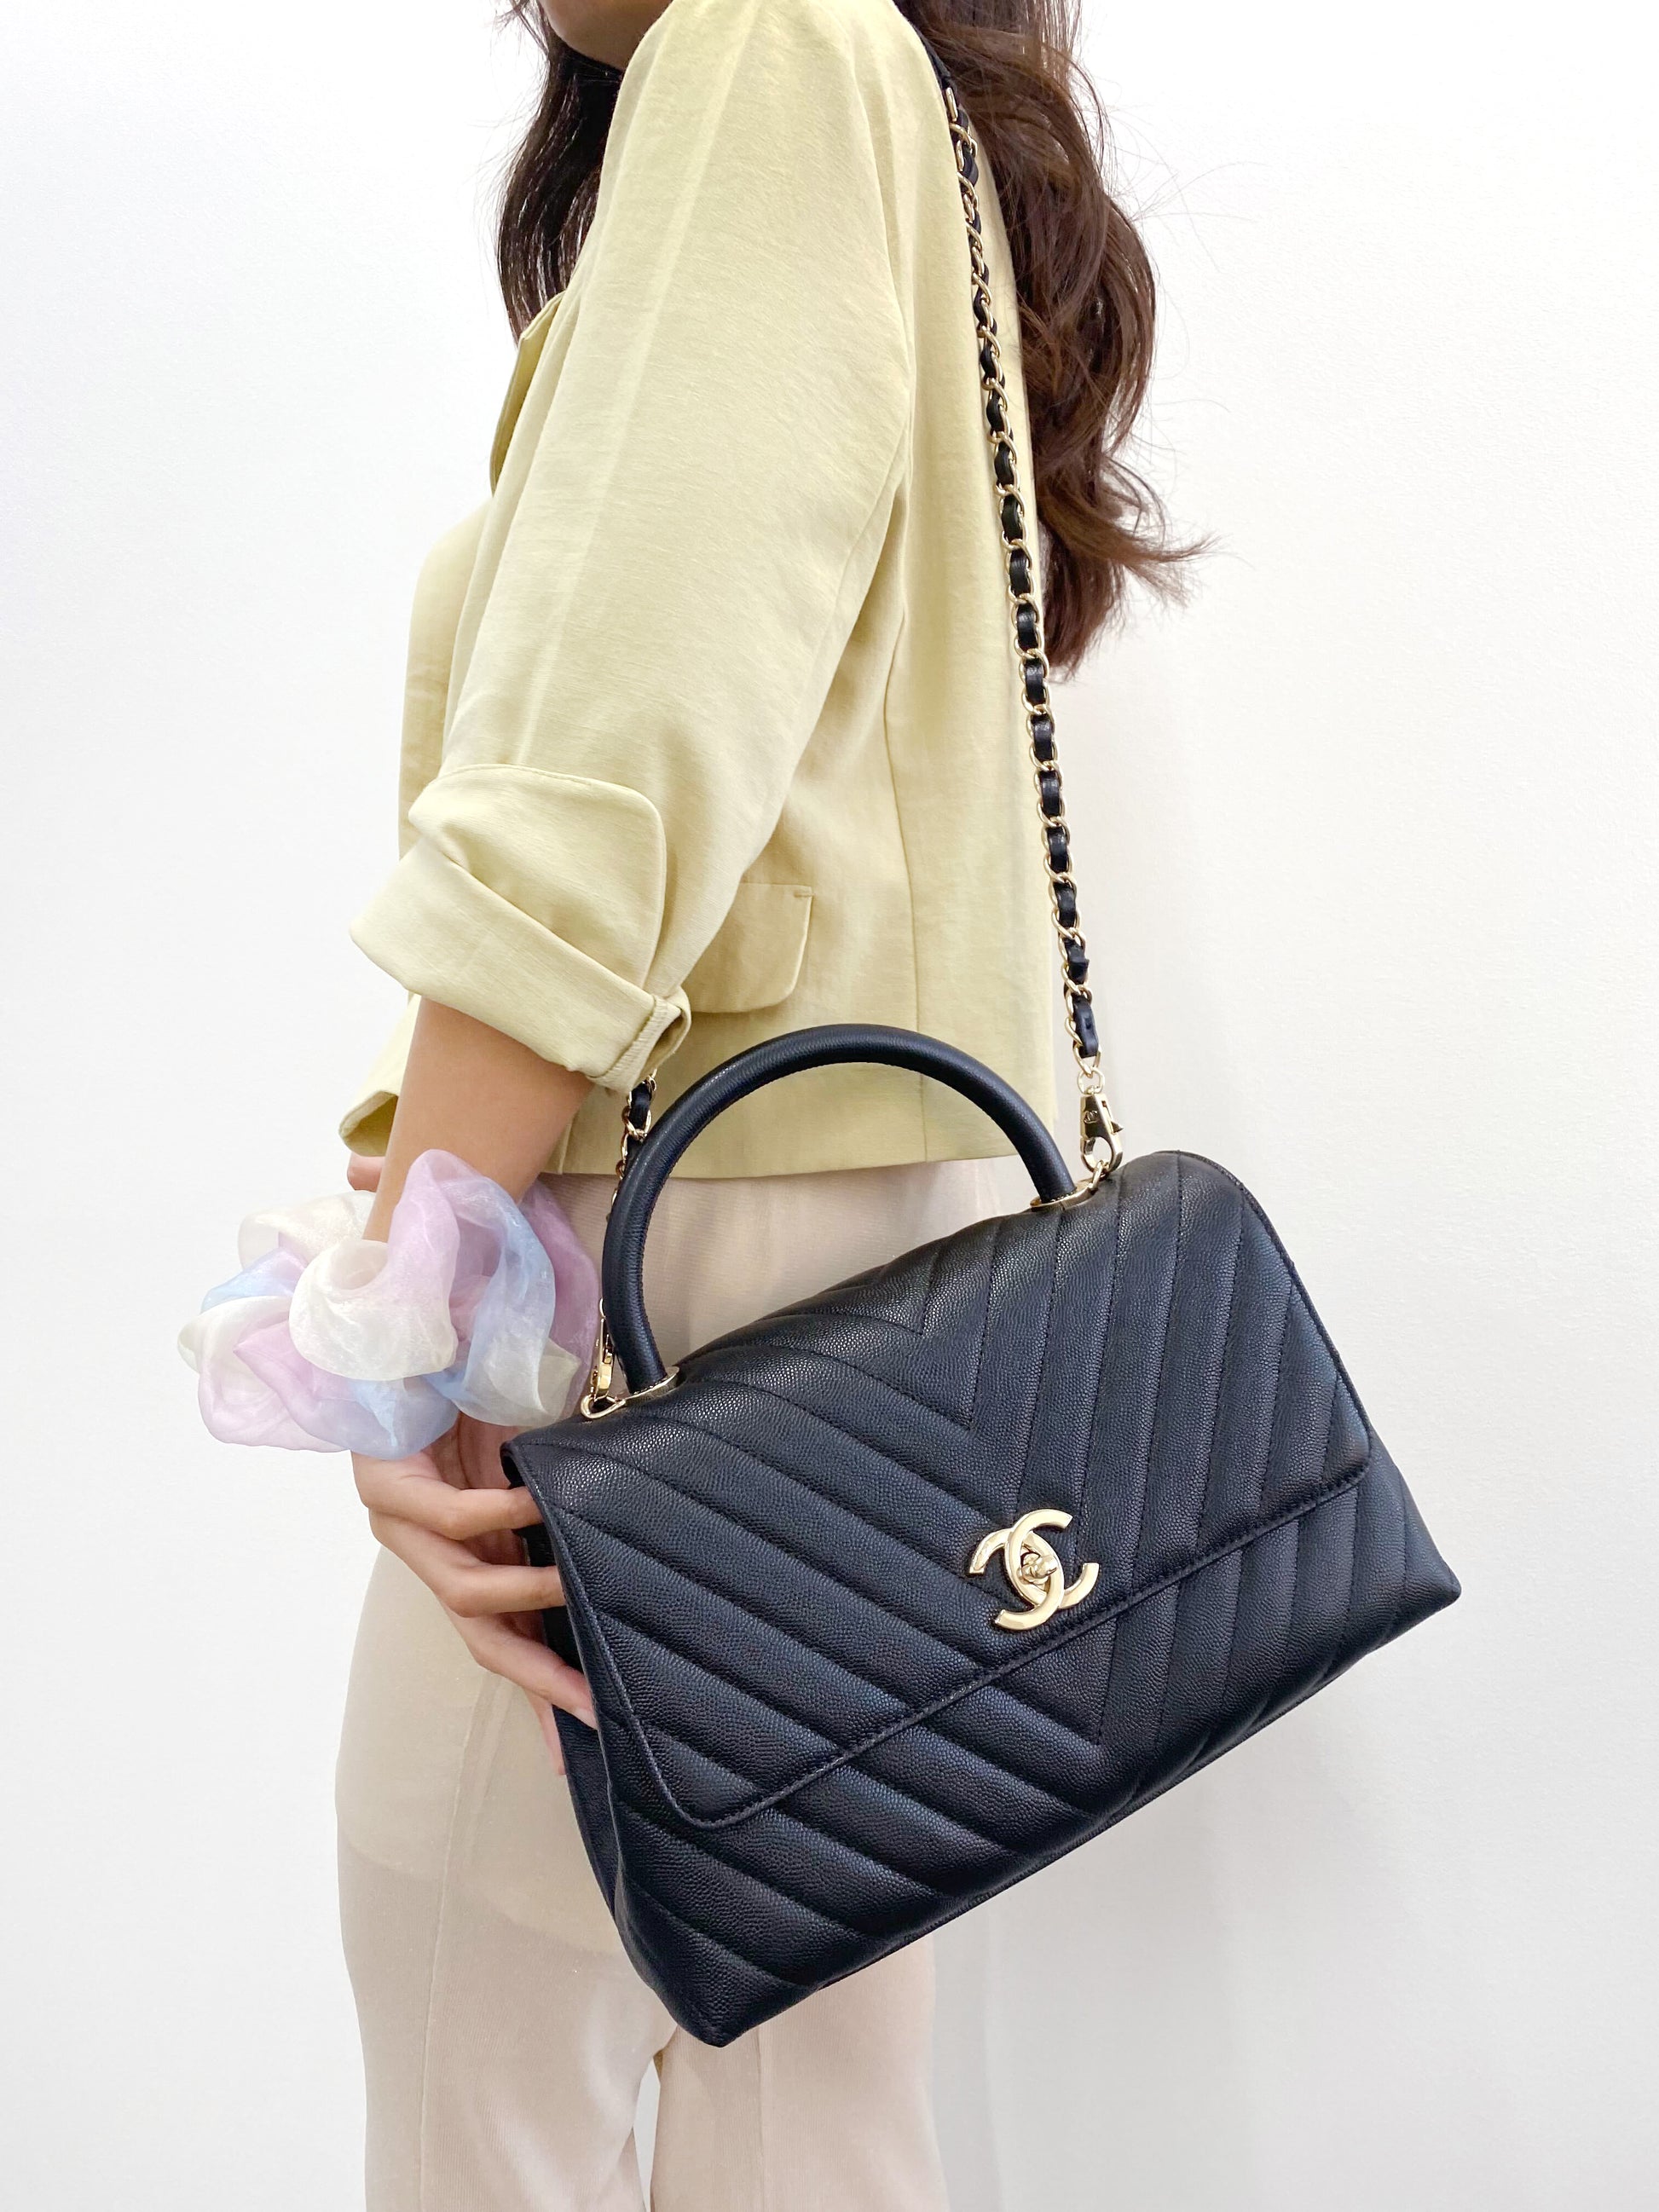 Sold Chanel Chevron Black and Gold Shoulder Bag